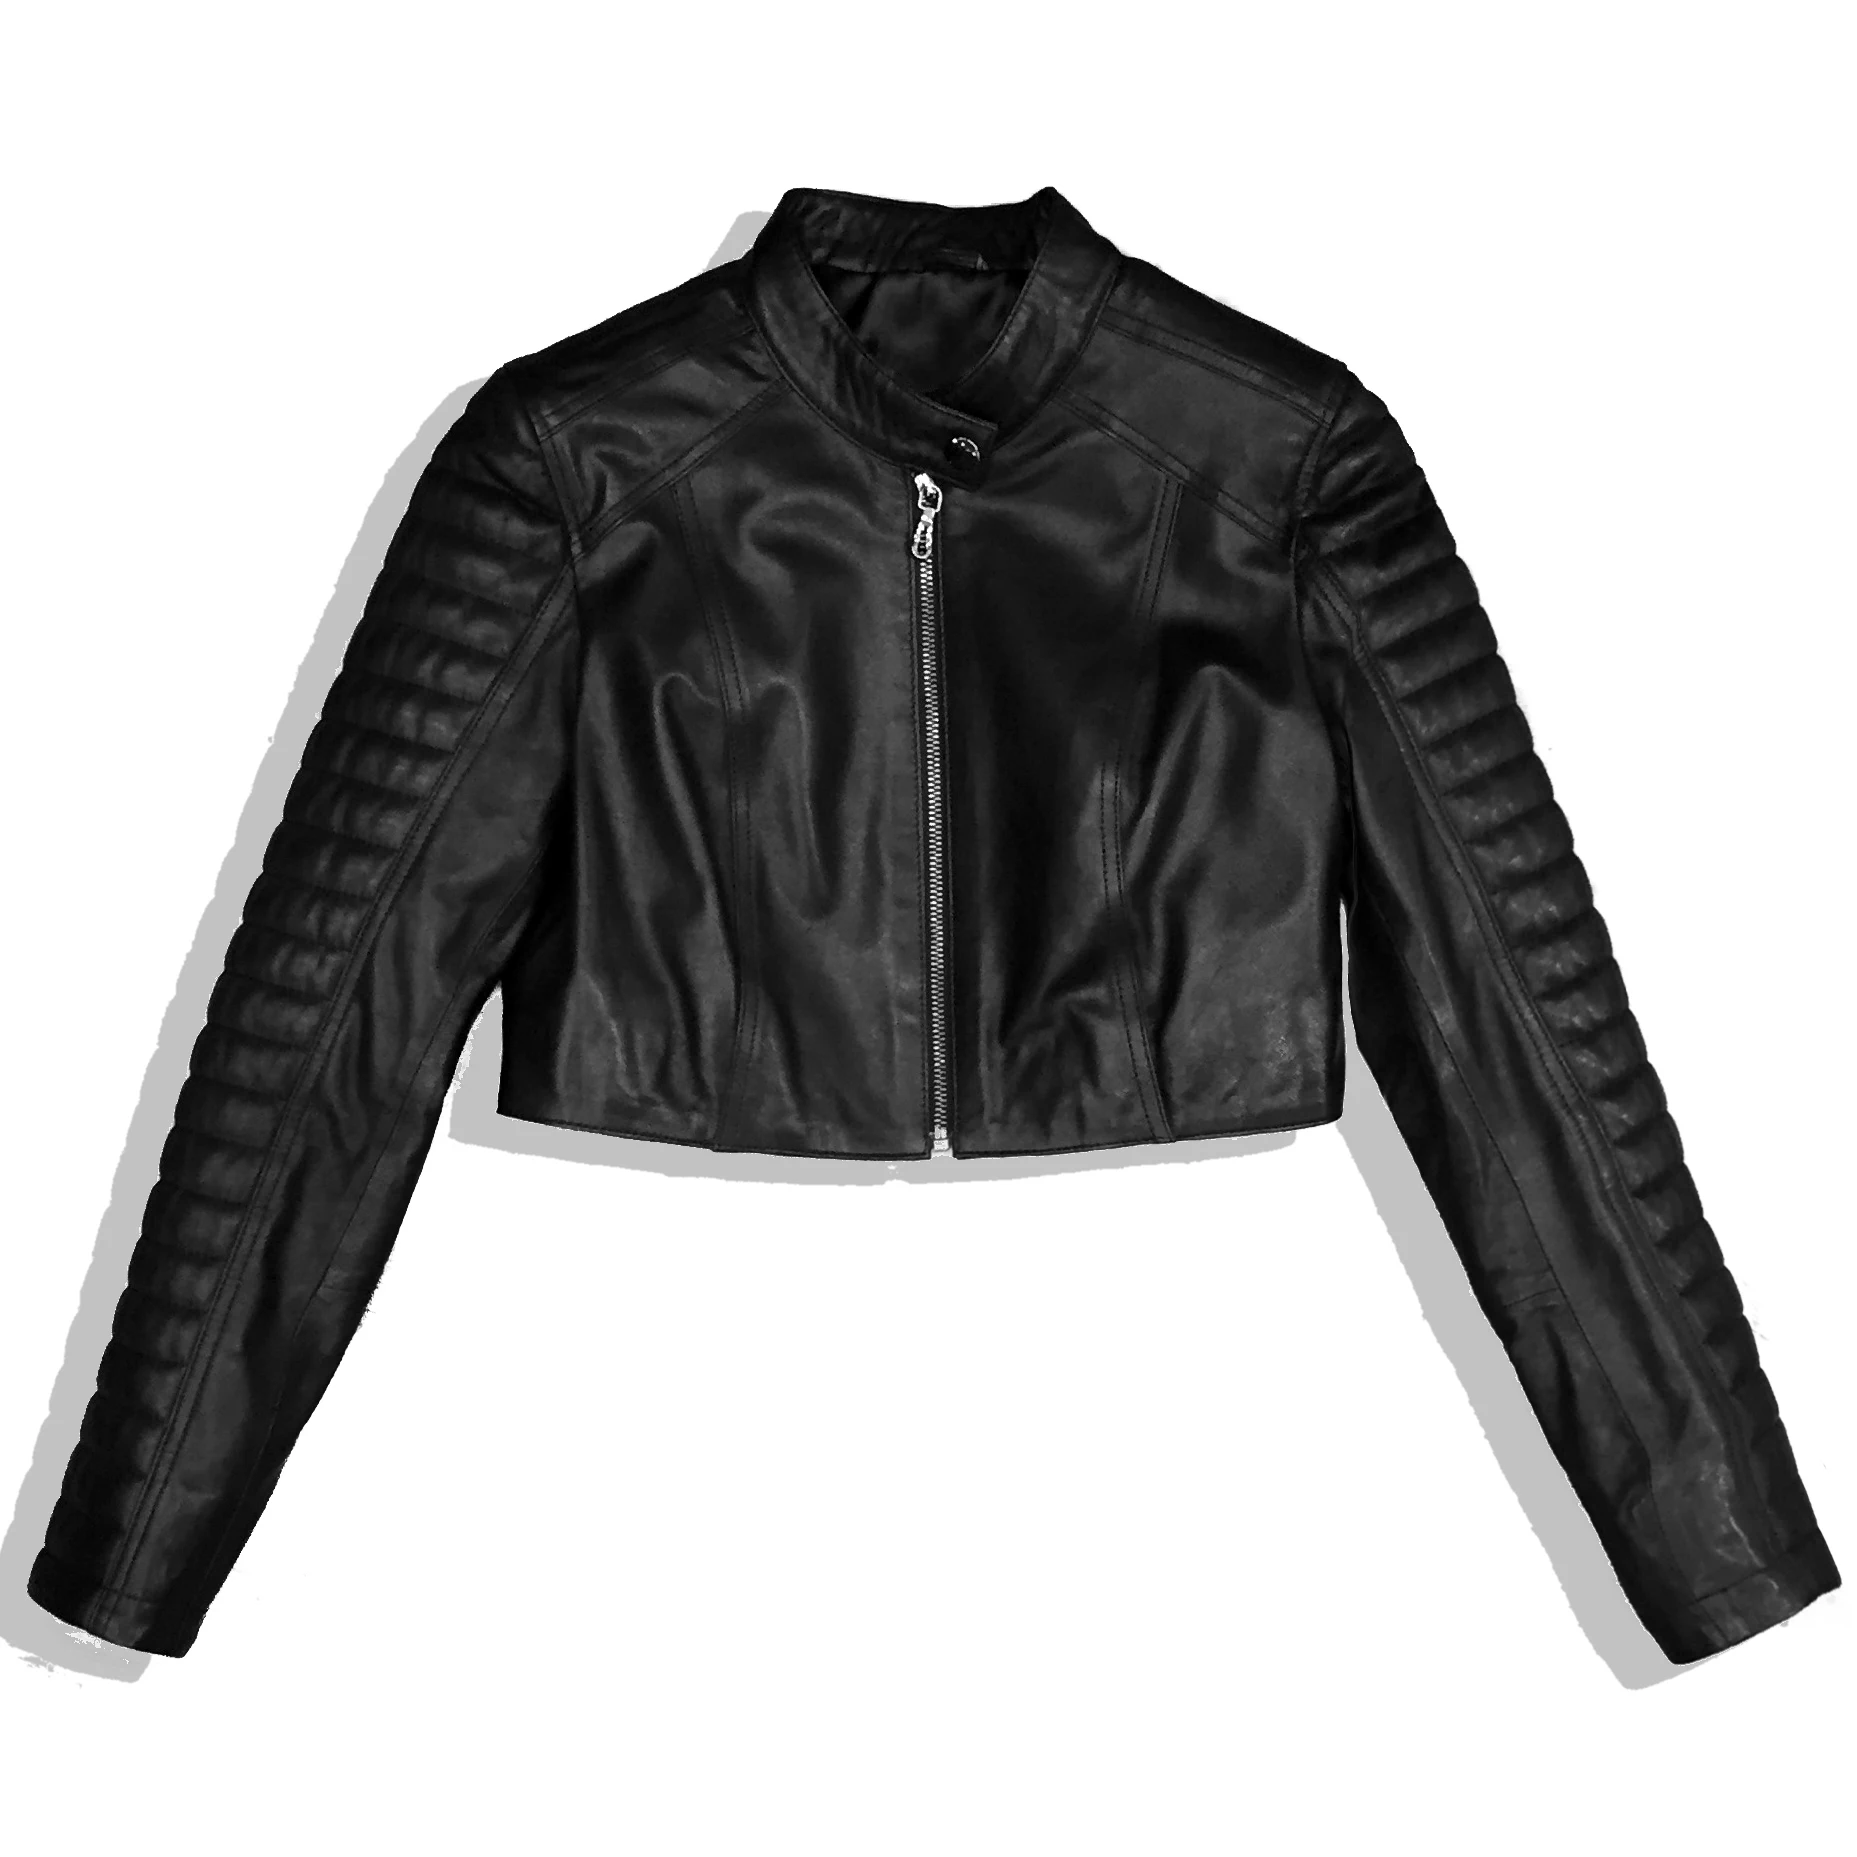 leather jackets importers in turkey formal wear suppliers